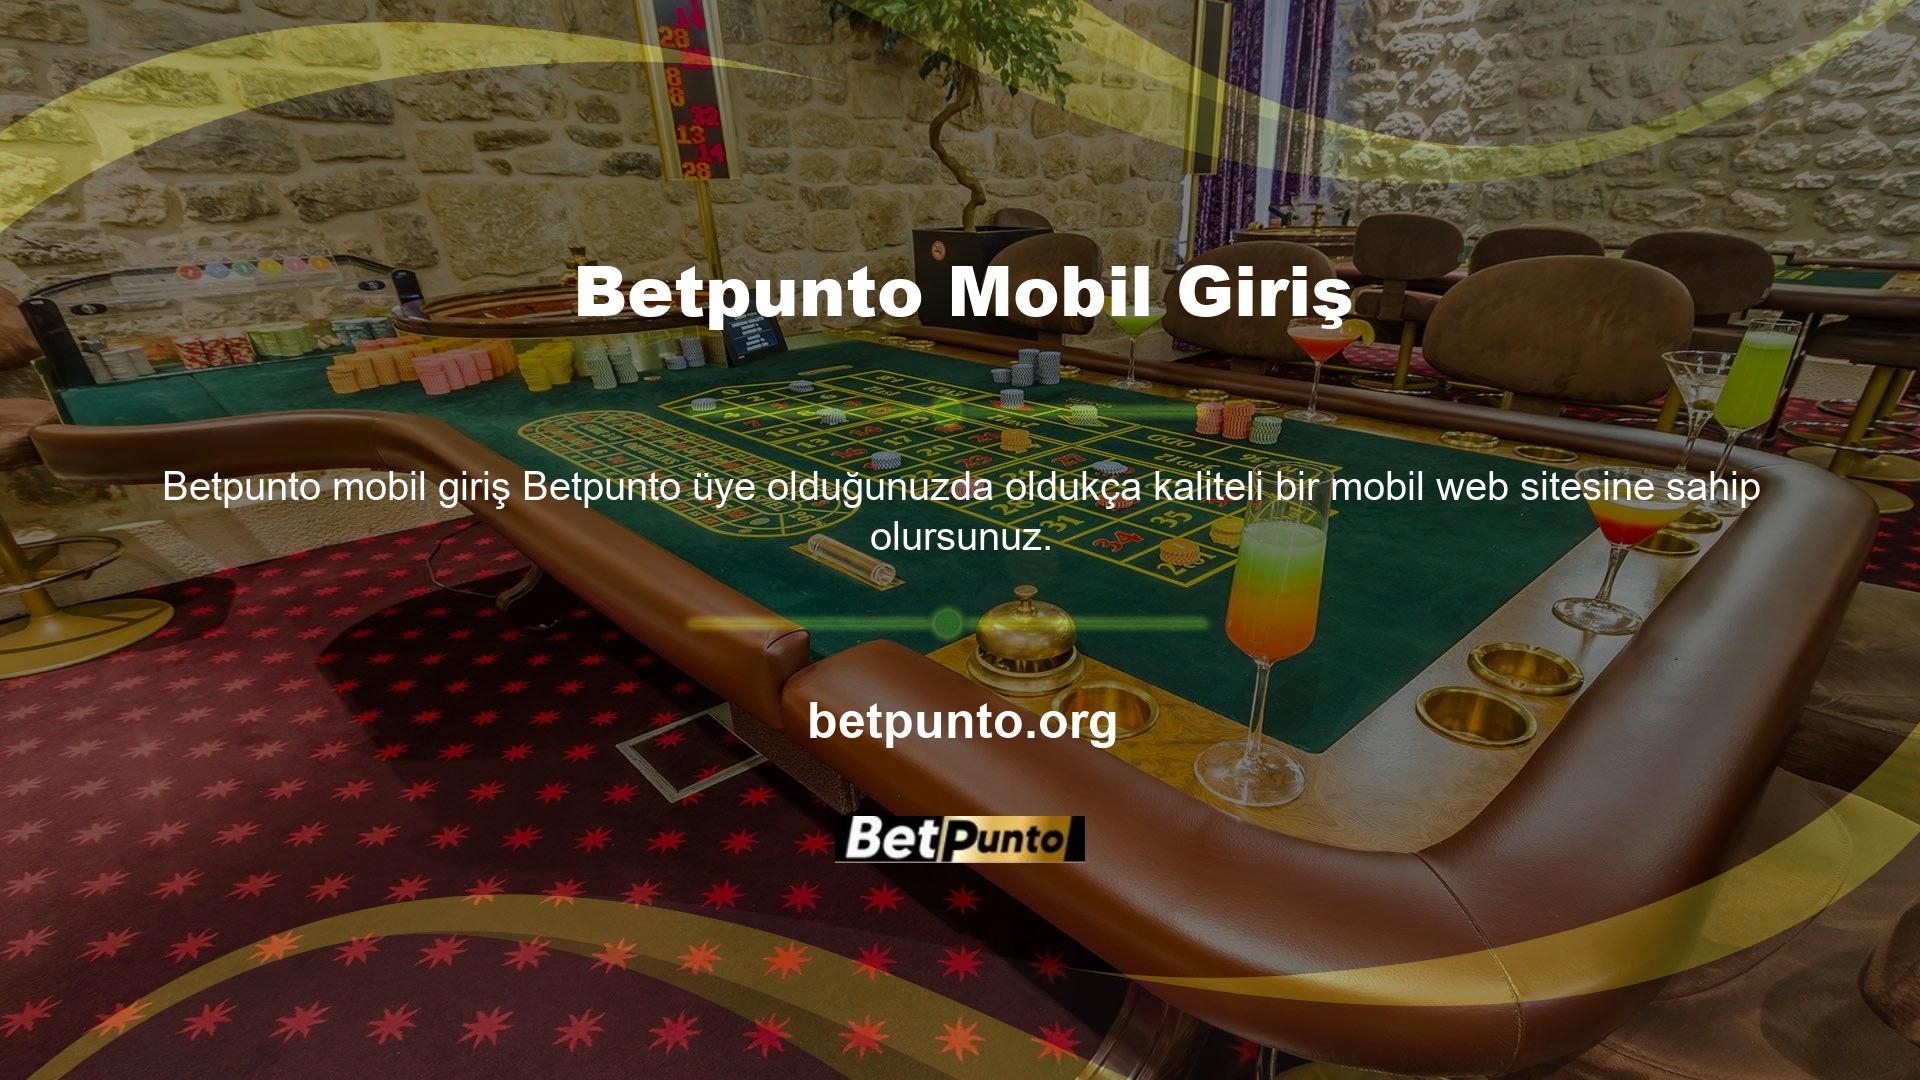 Tasarım, Betpunto Mobil Giriş versiyonuna benzer şekilde siyah zemin üzerine renkli Betpunto Mobil Giriş ile bütünleştirilmiştir